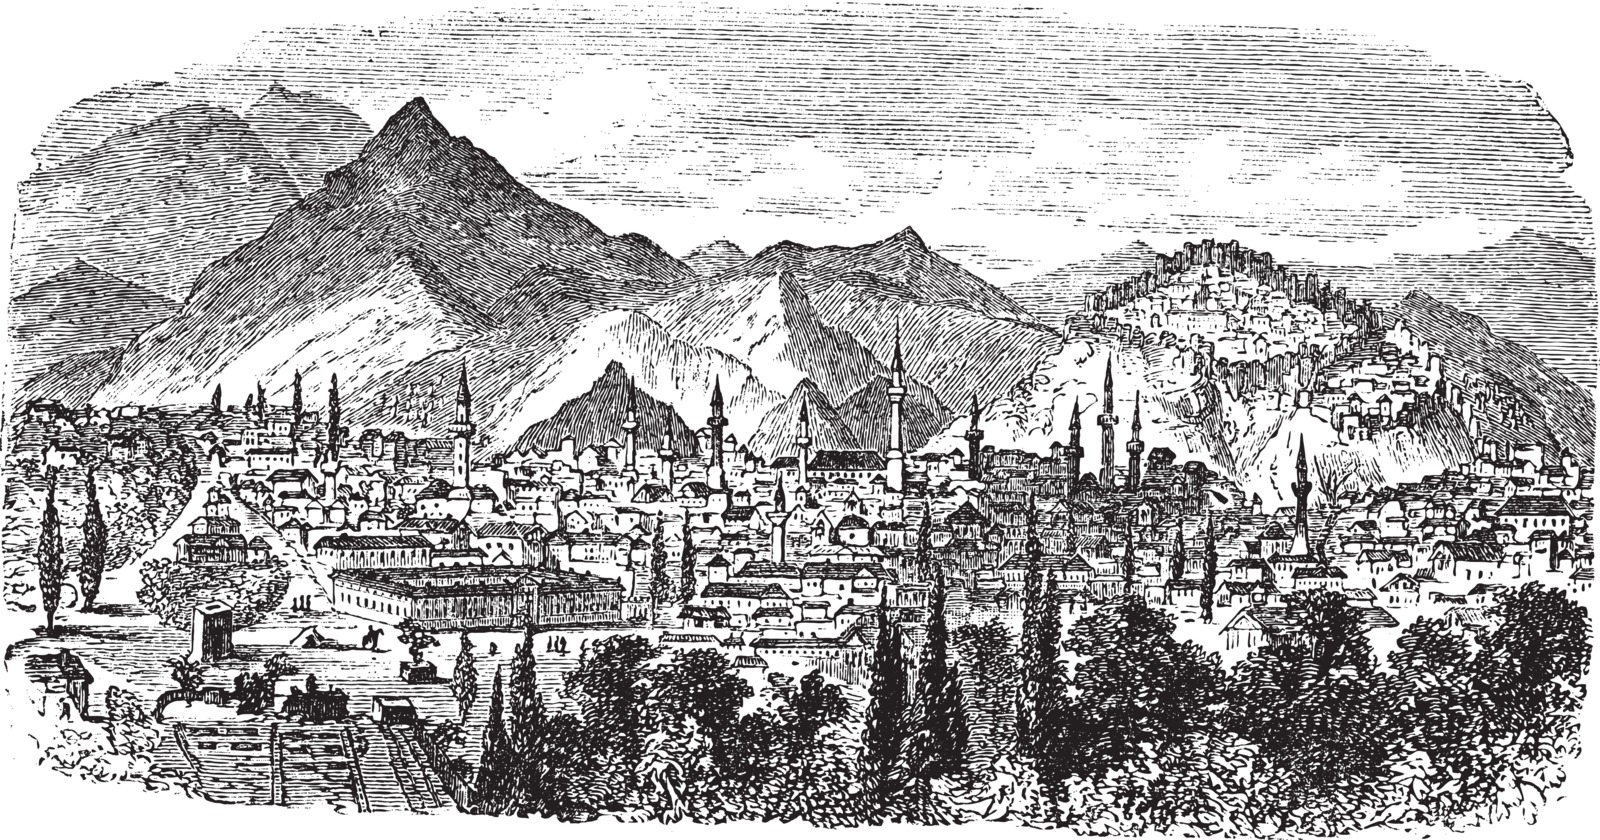 View of Kütahya